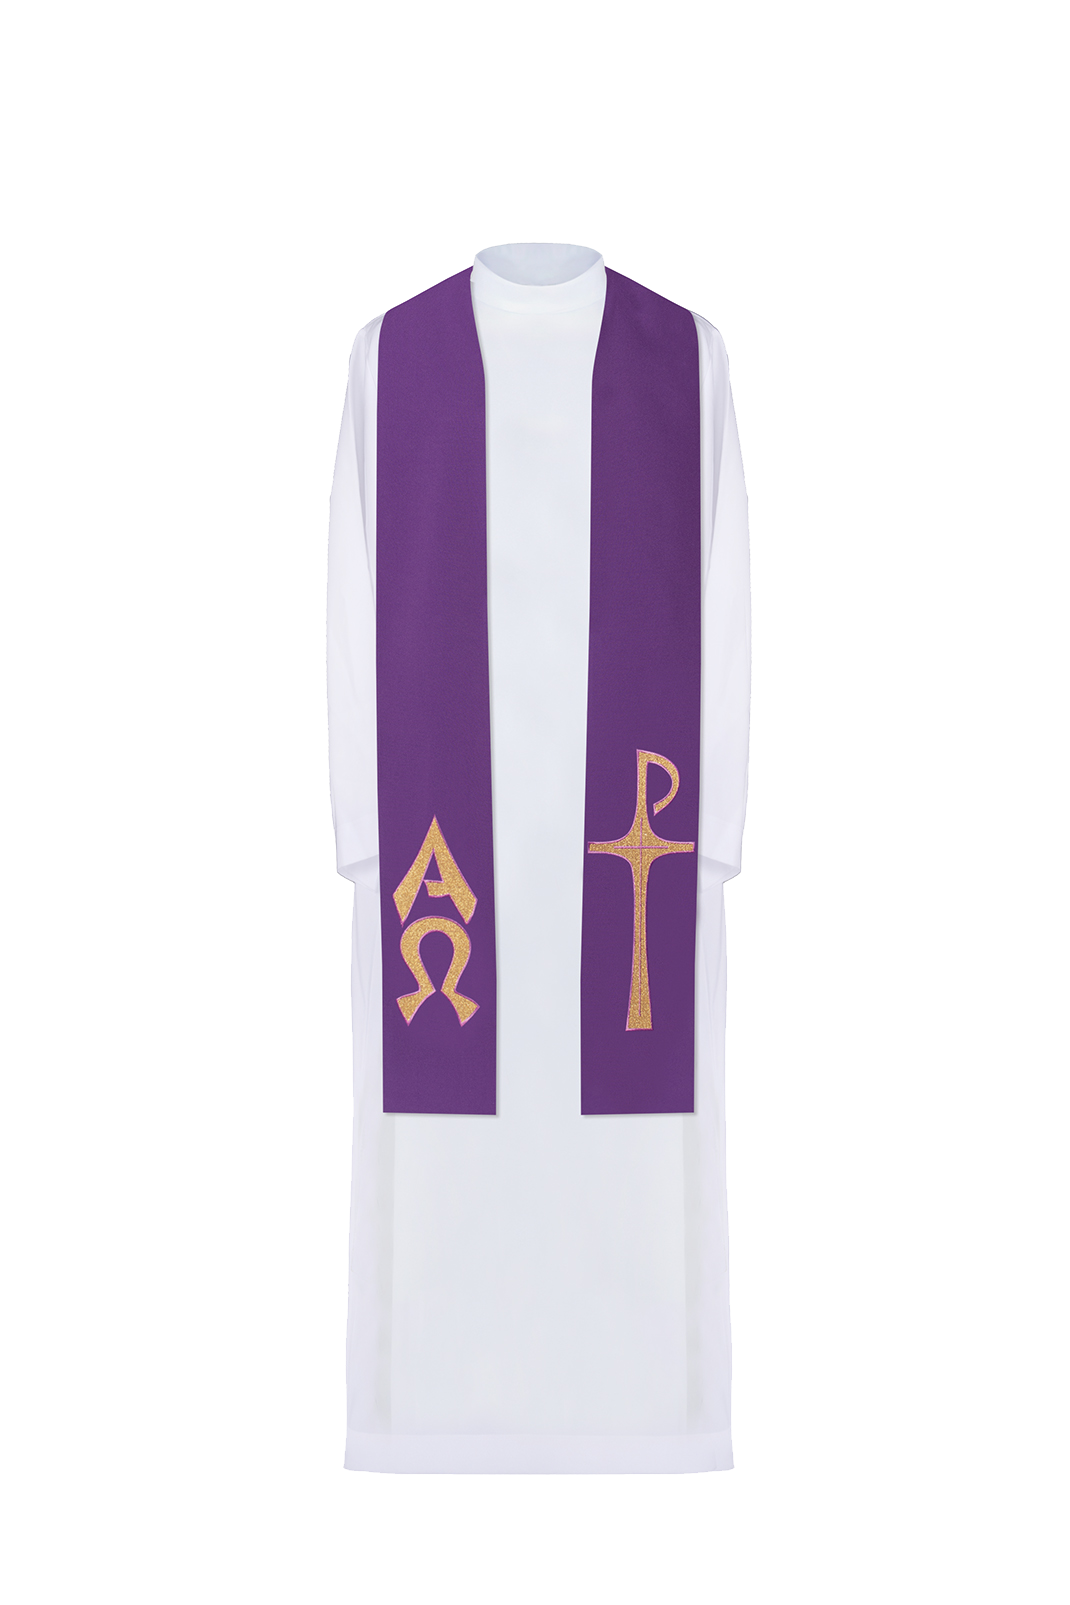 Stuła kapłańska haftowana Alfa i Omega Fioletowa